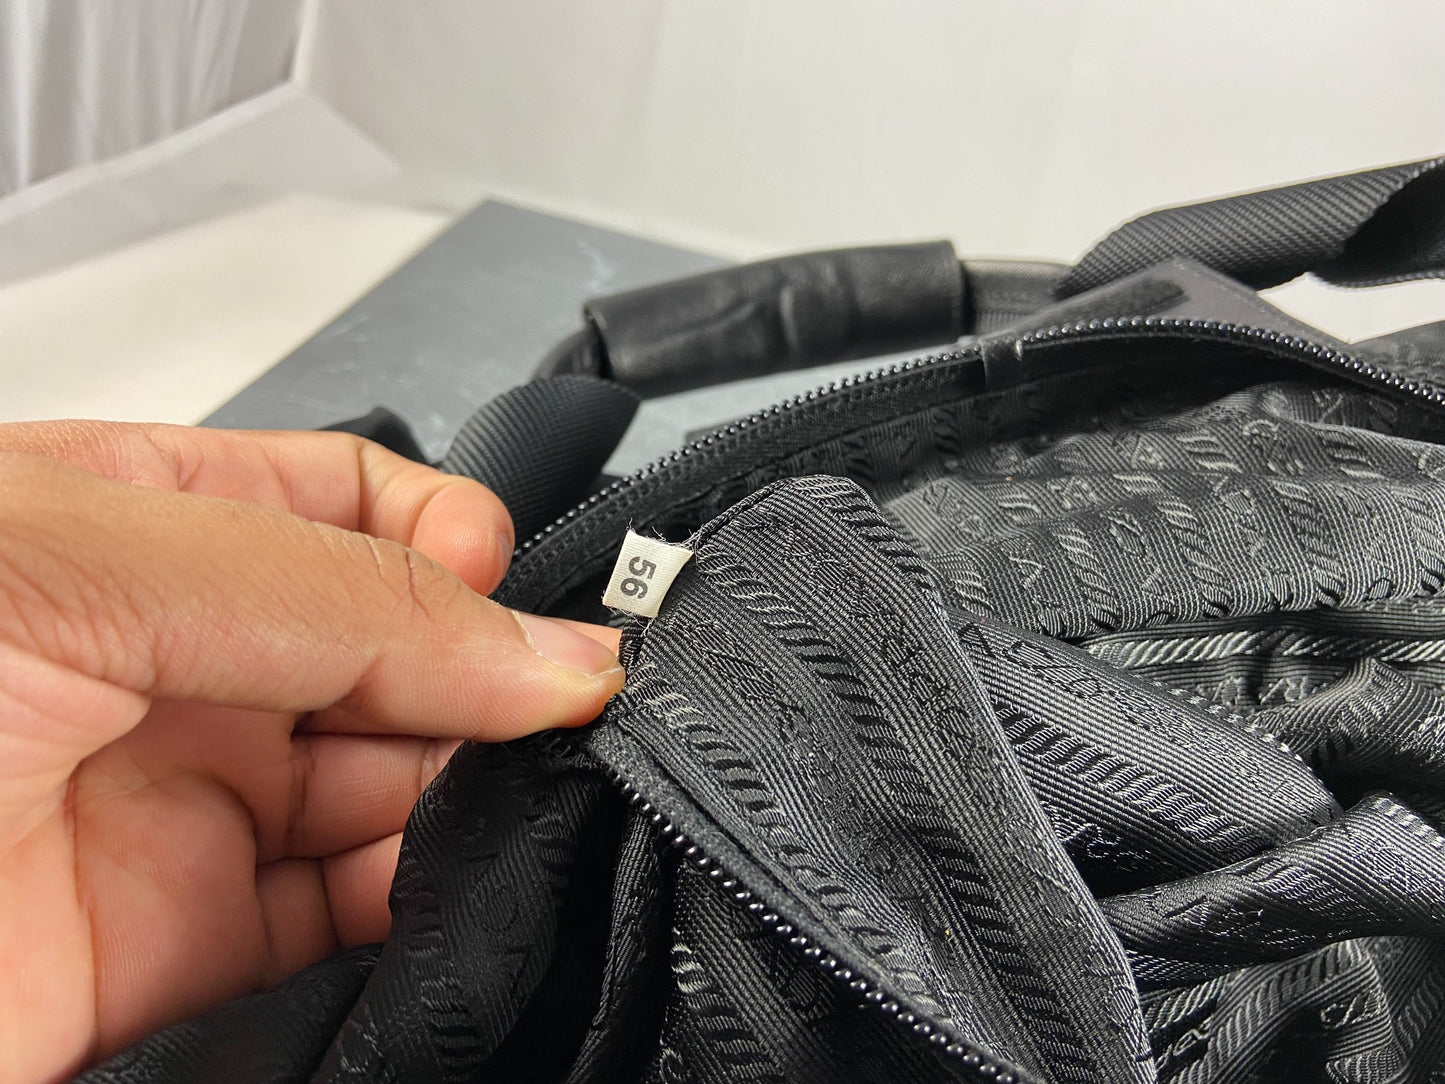 Prada Tessuto Nylon Travel Duffle Bag Black